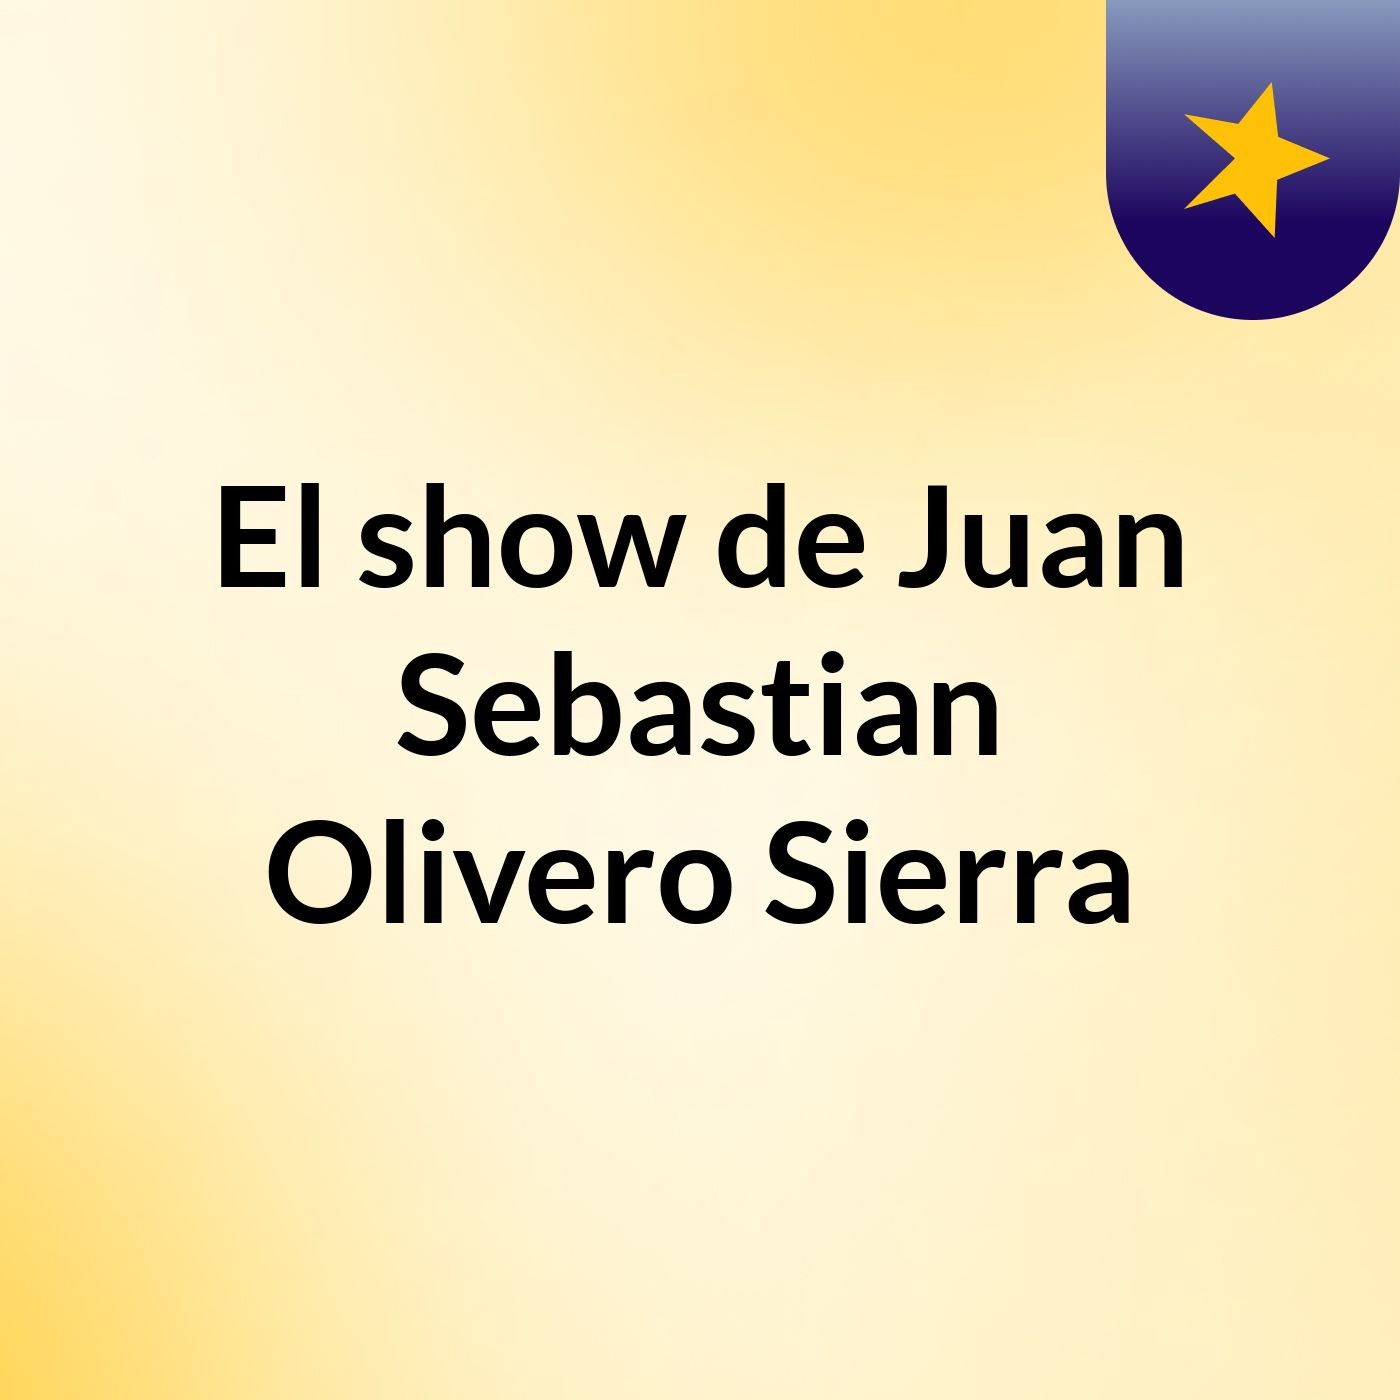 El show de Juan Sebastian Olivero Sierra